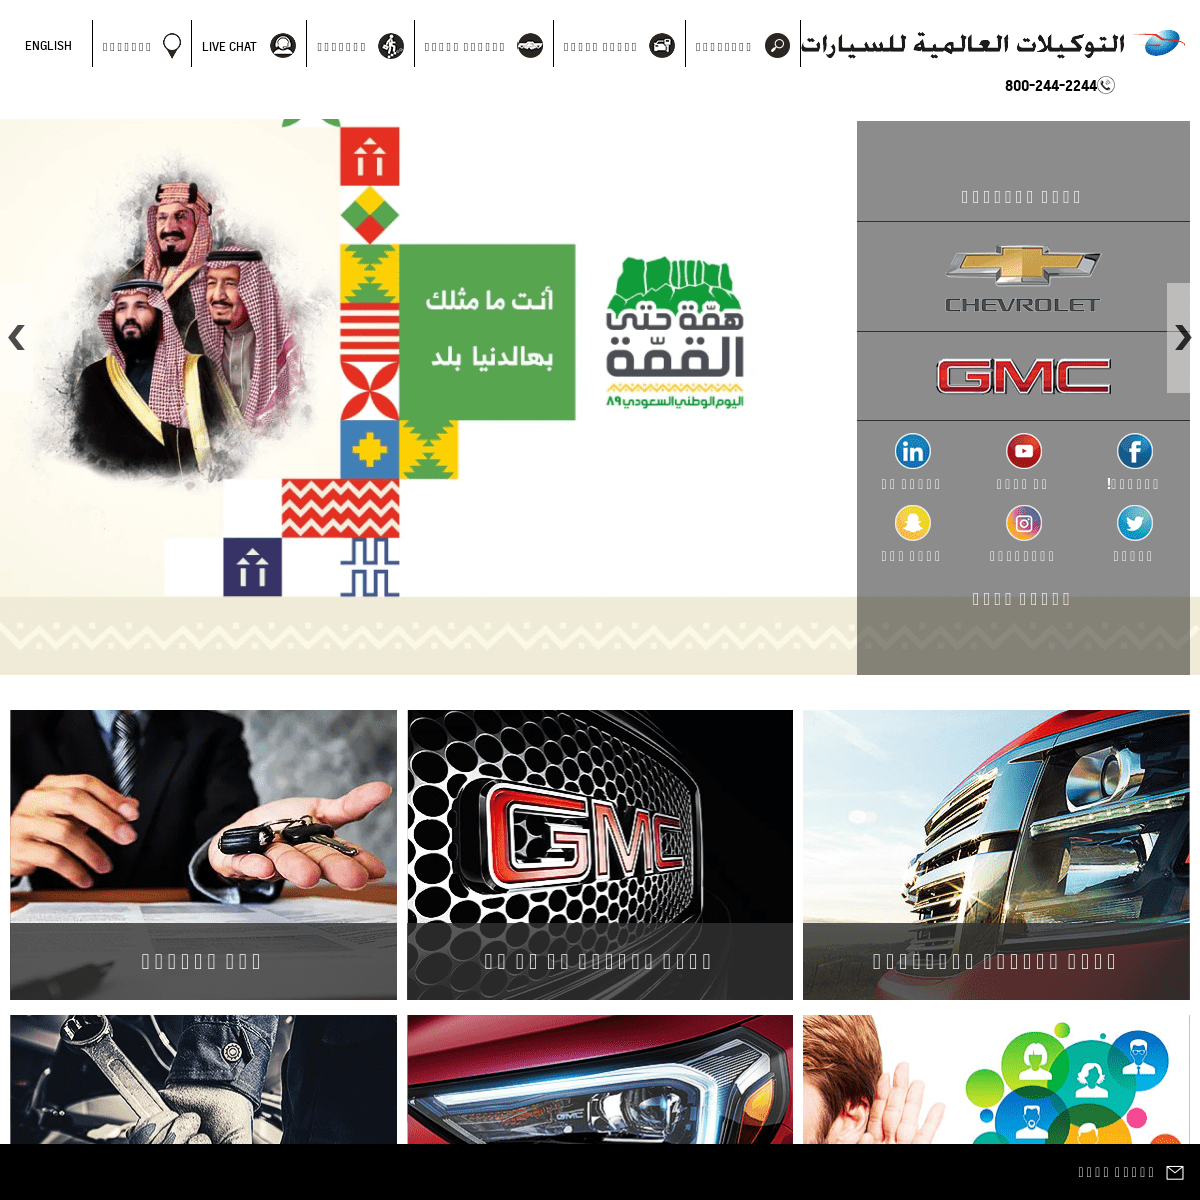  وكيل سيارات | المملكة العربية السعودية | التوكيلات العالمية  للسيارات